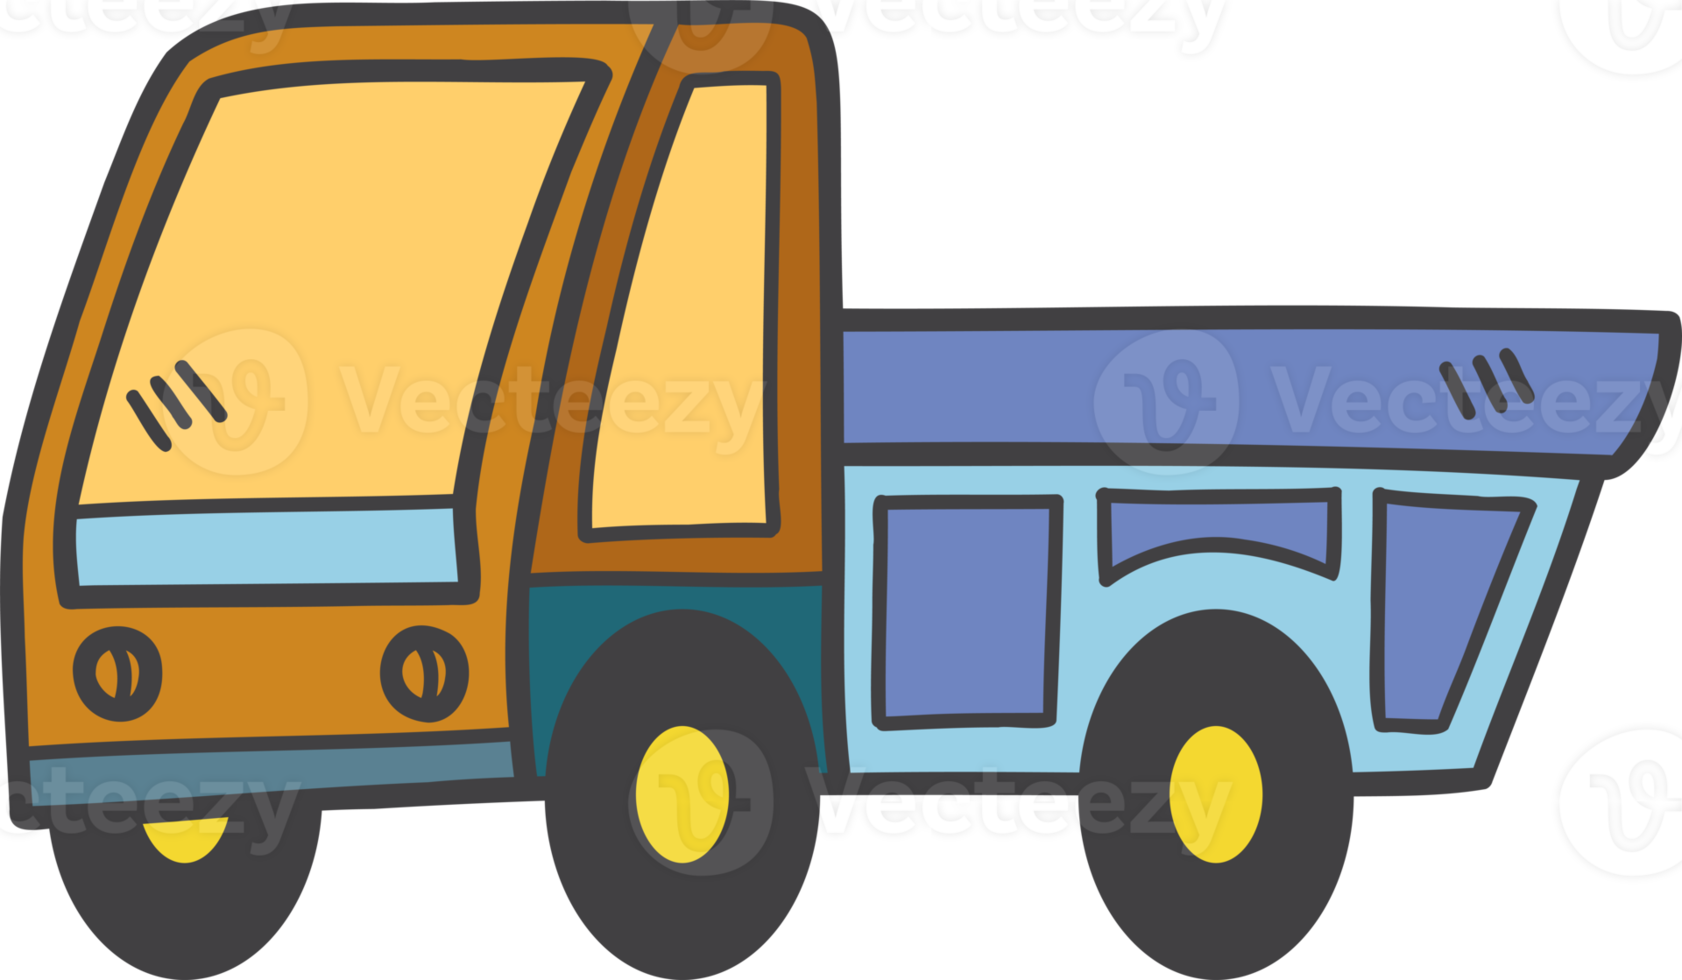 hand- getrokken speelgoed- vrachtauto voor kinderen illustratie png